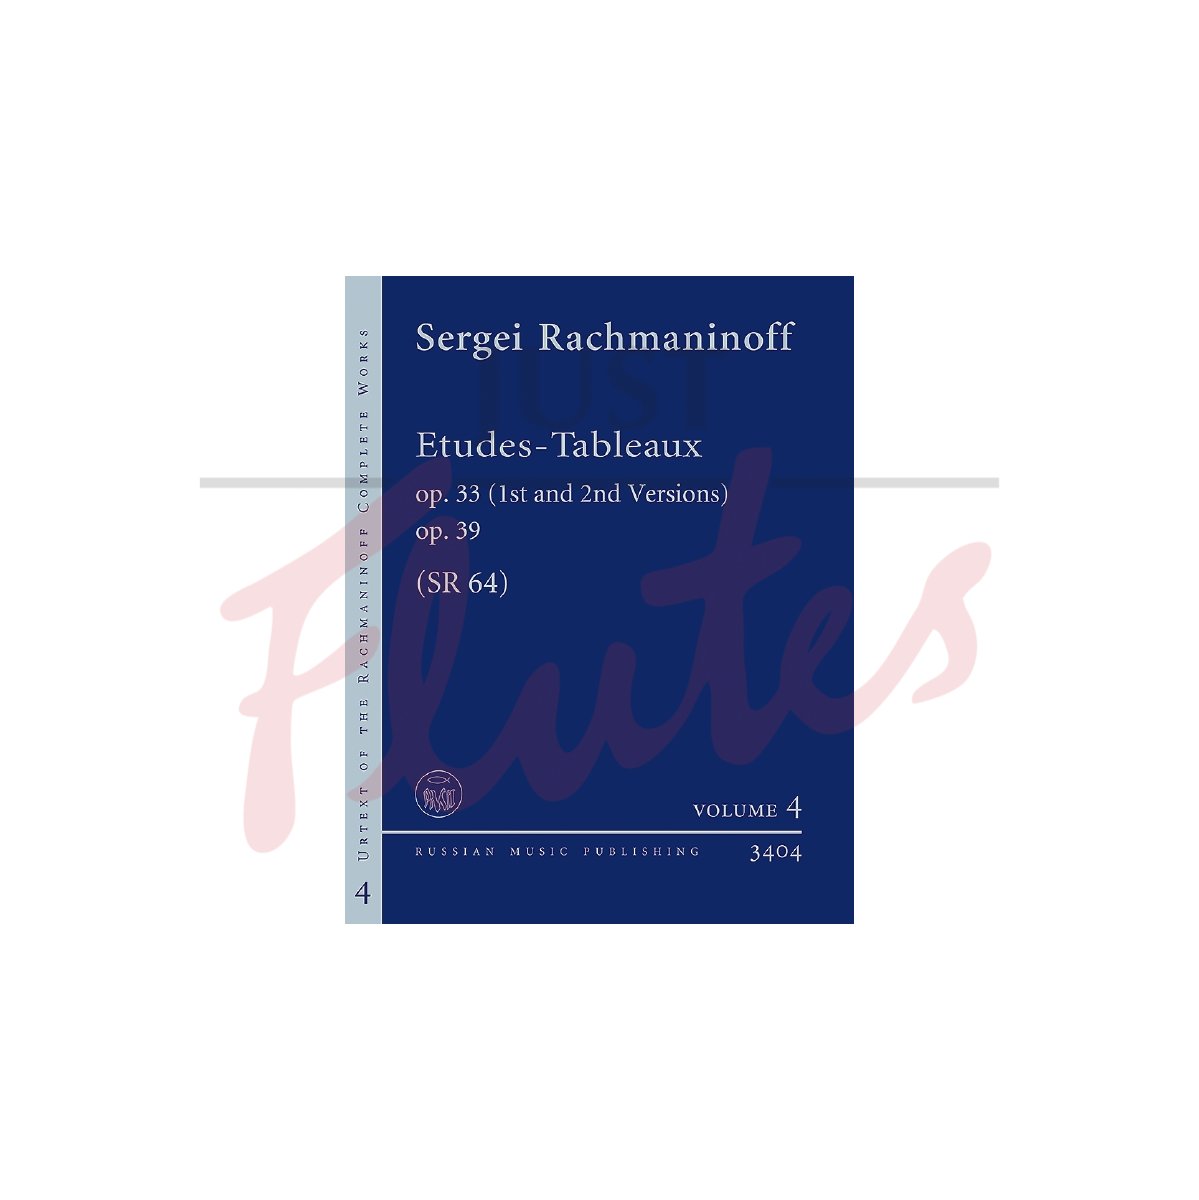 Etudes-Tableaux op. 33/1st + 2nd Versions